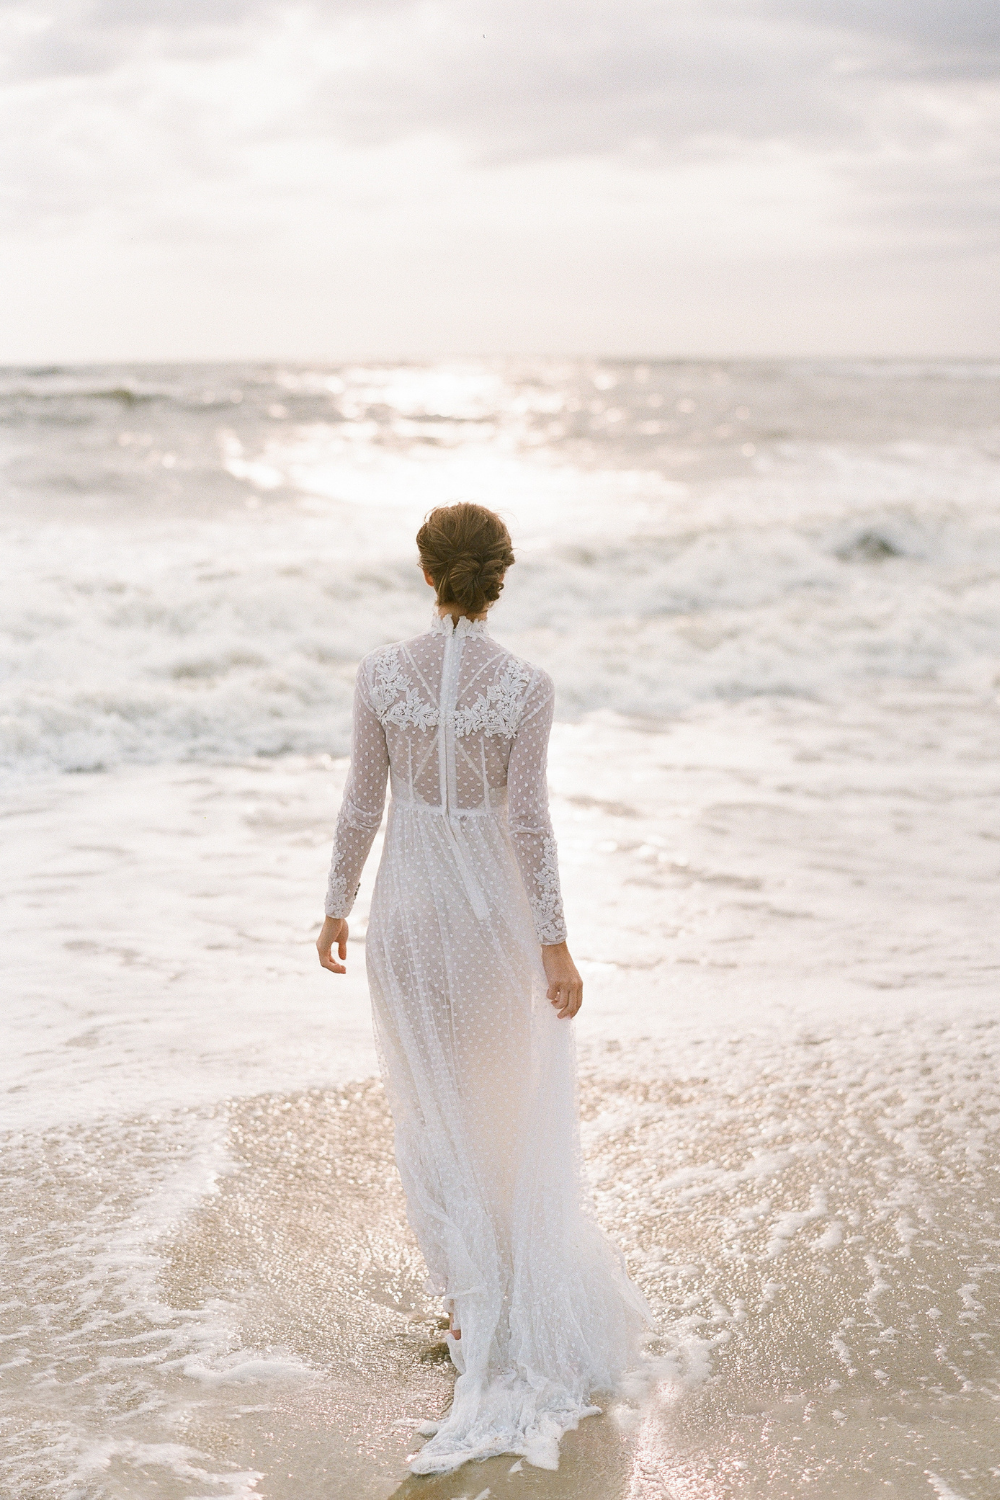 Bride walking towards ocean in vintage style beach wedding dress